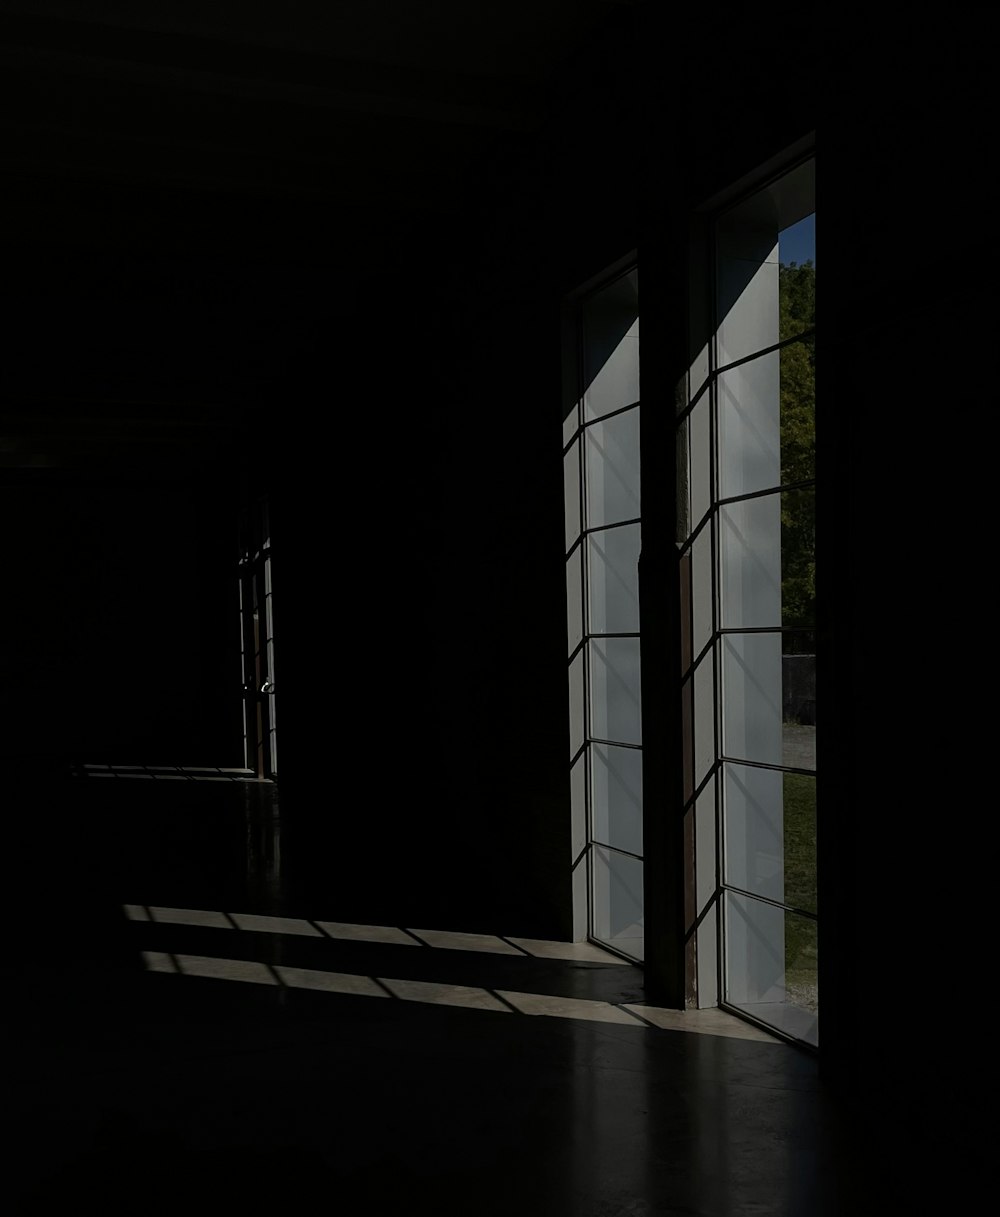 una stanza buia con una luce accesa